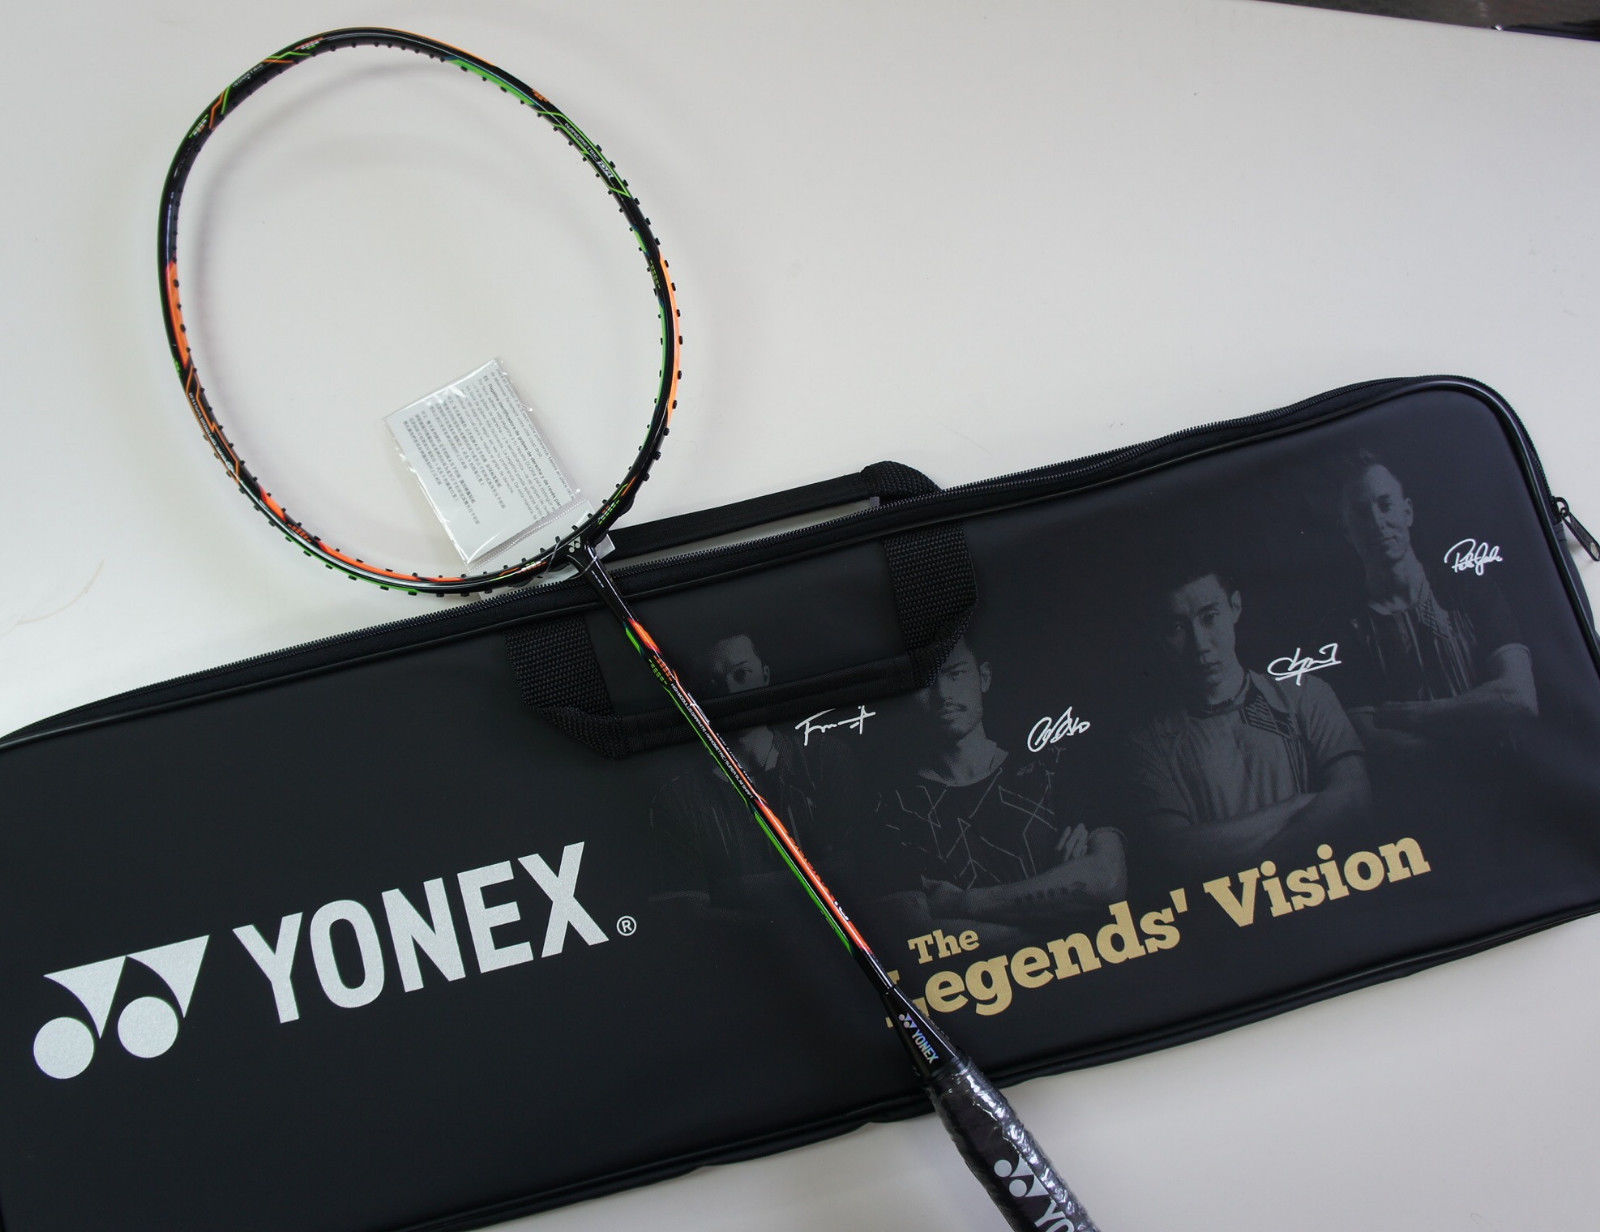 Yonex Duora 10 Lee Chong Wei Legends Vision Badminton Racquet 3U, G5